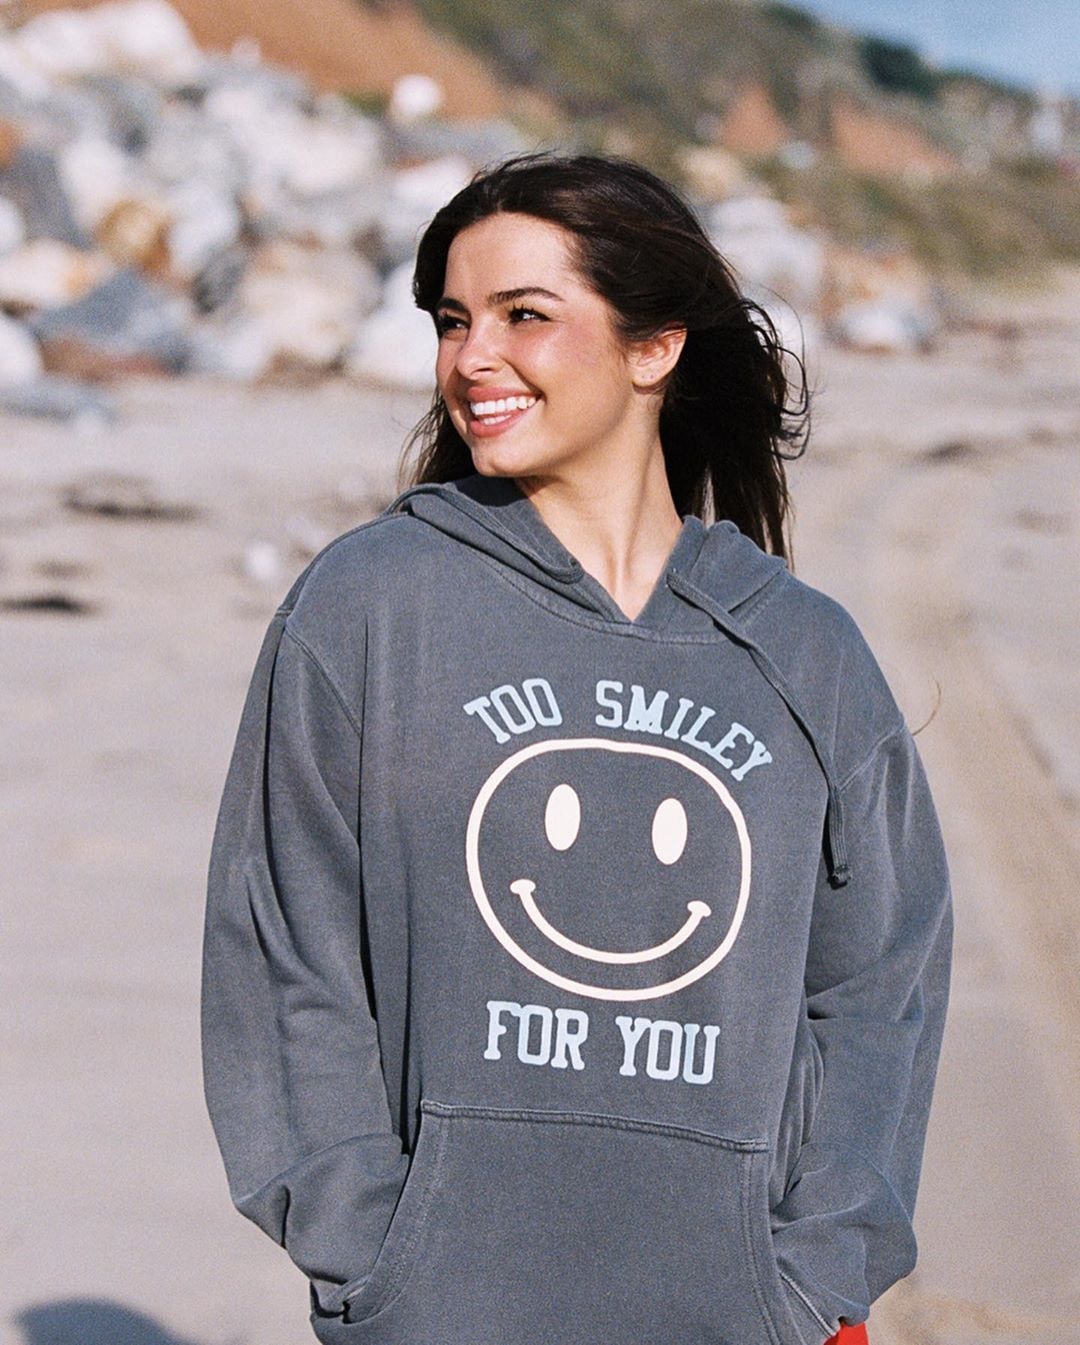 Too smiley for you sweatshirt